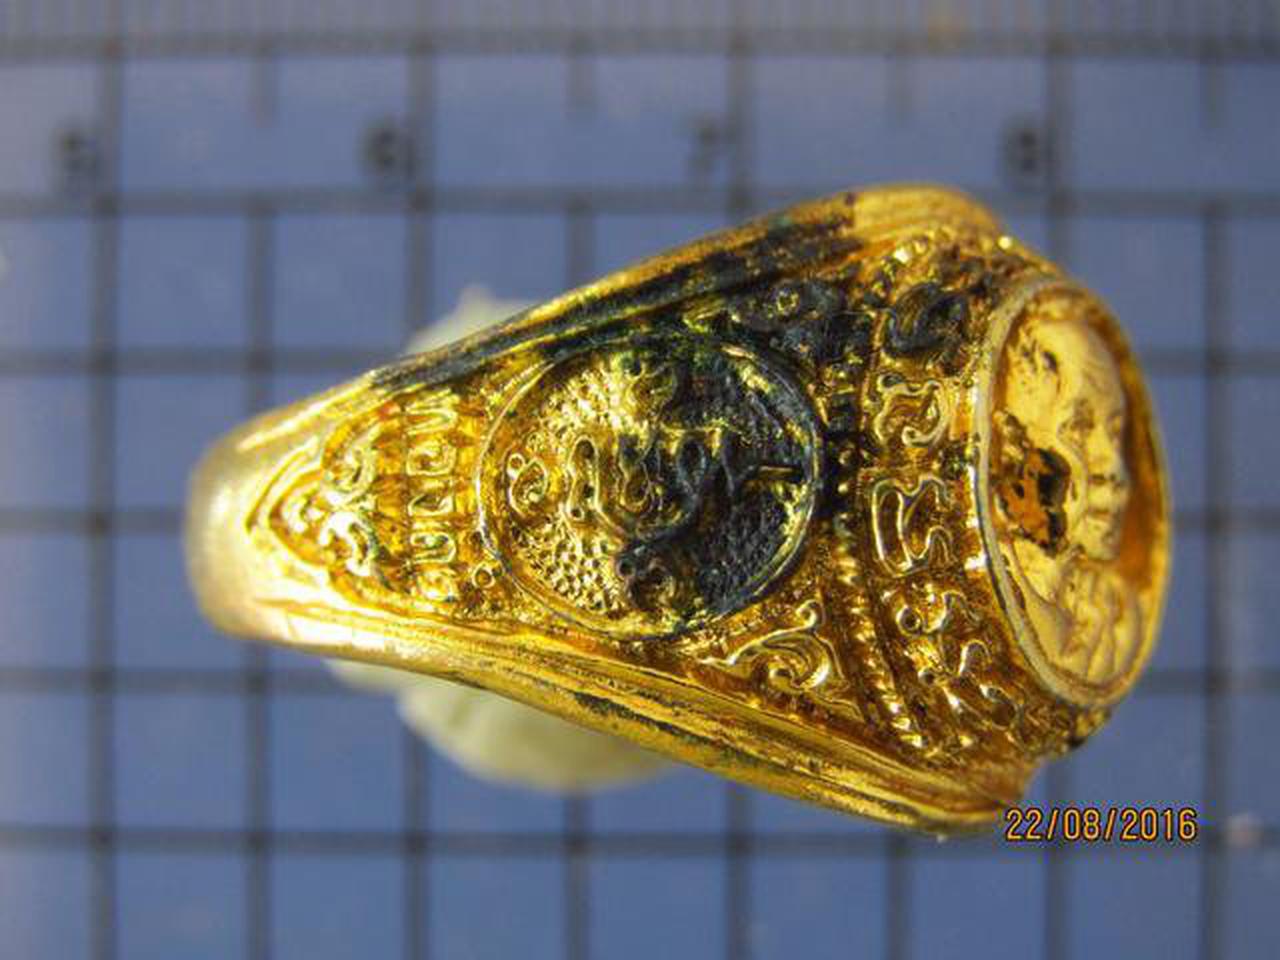 3784 แหวนกระไหล่ทอง หลวงพ่อทองดำ วัดท่าทอง ปี 2547 จ.อุตรดิต รูปเล็กที่ 4